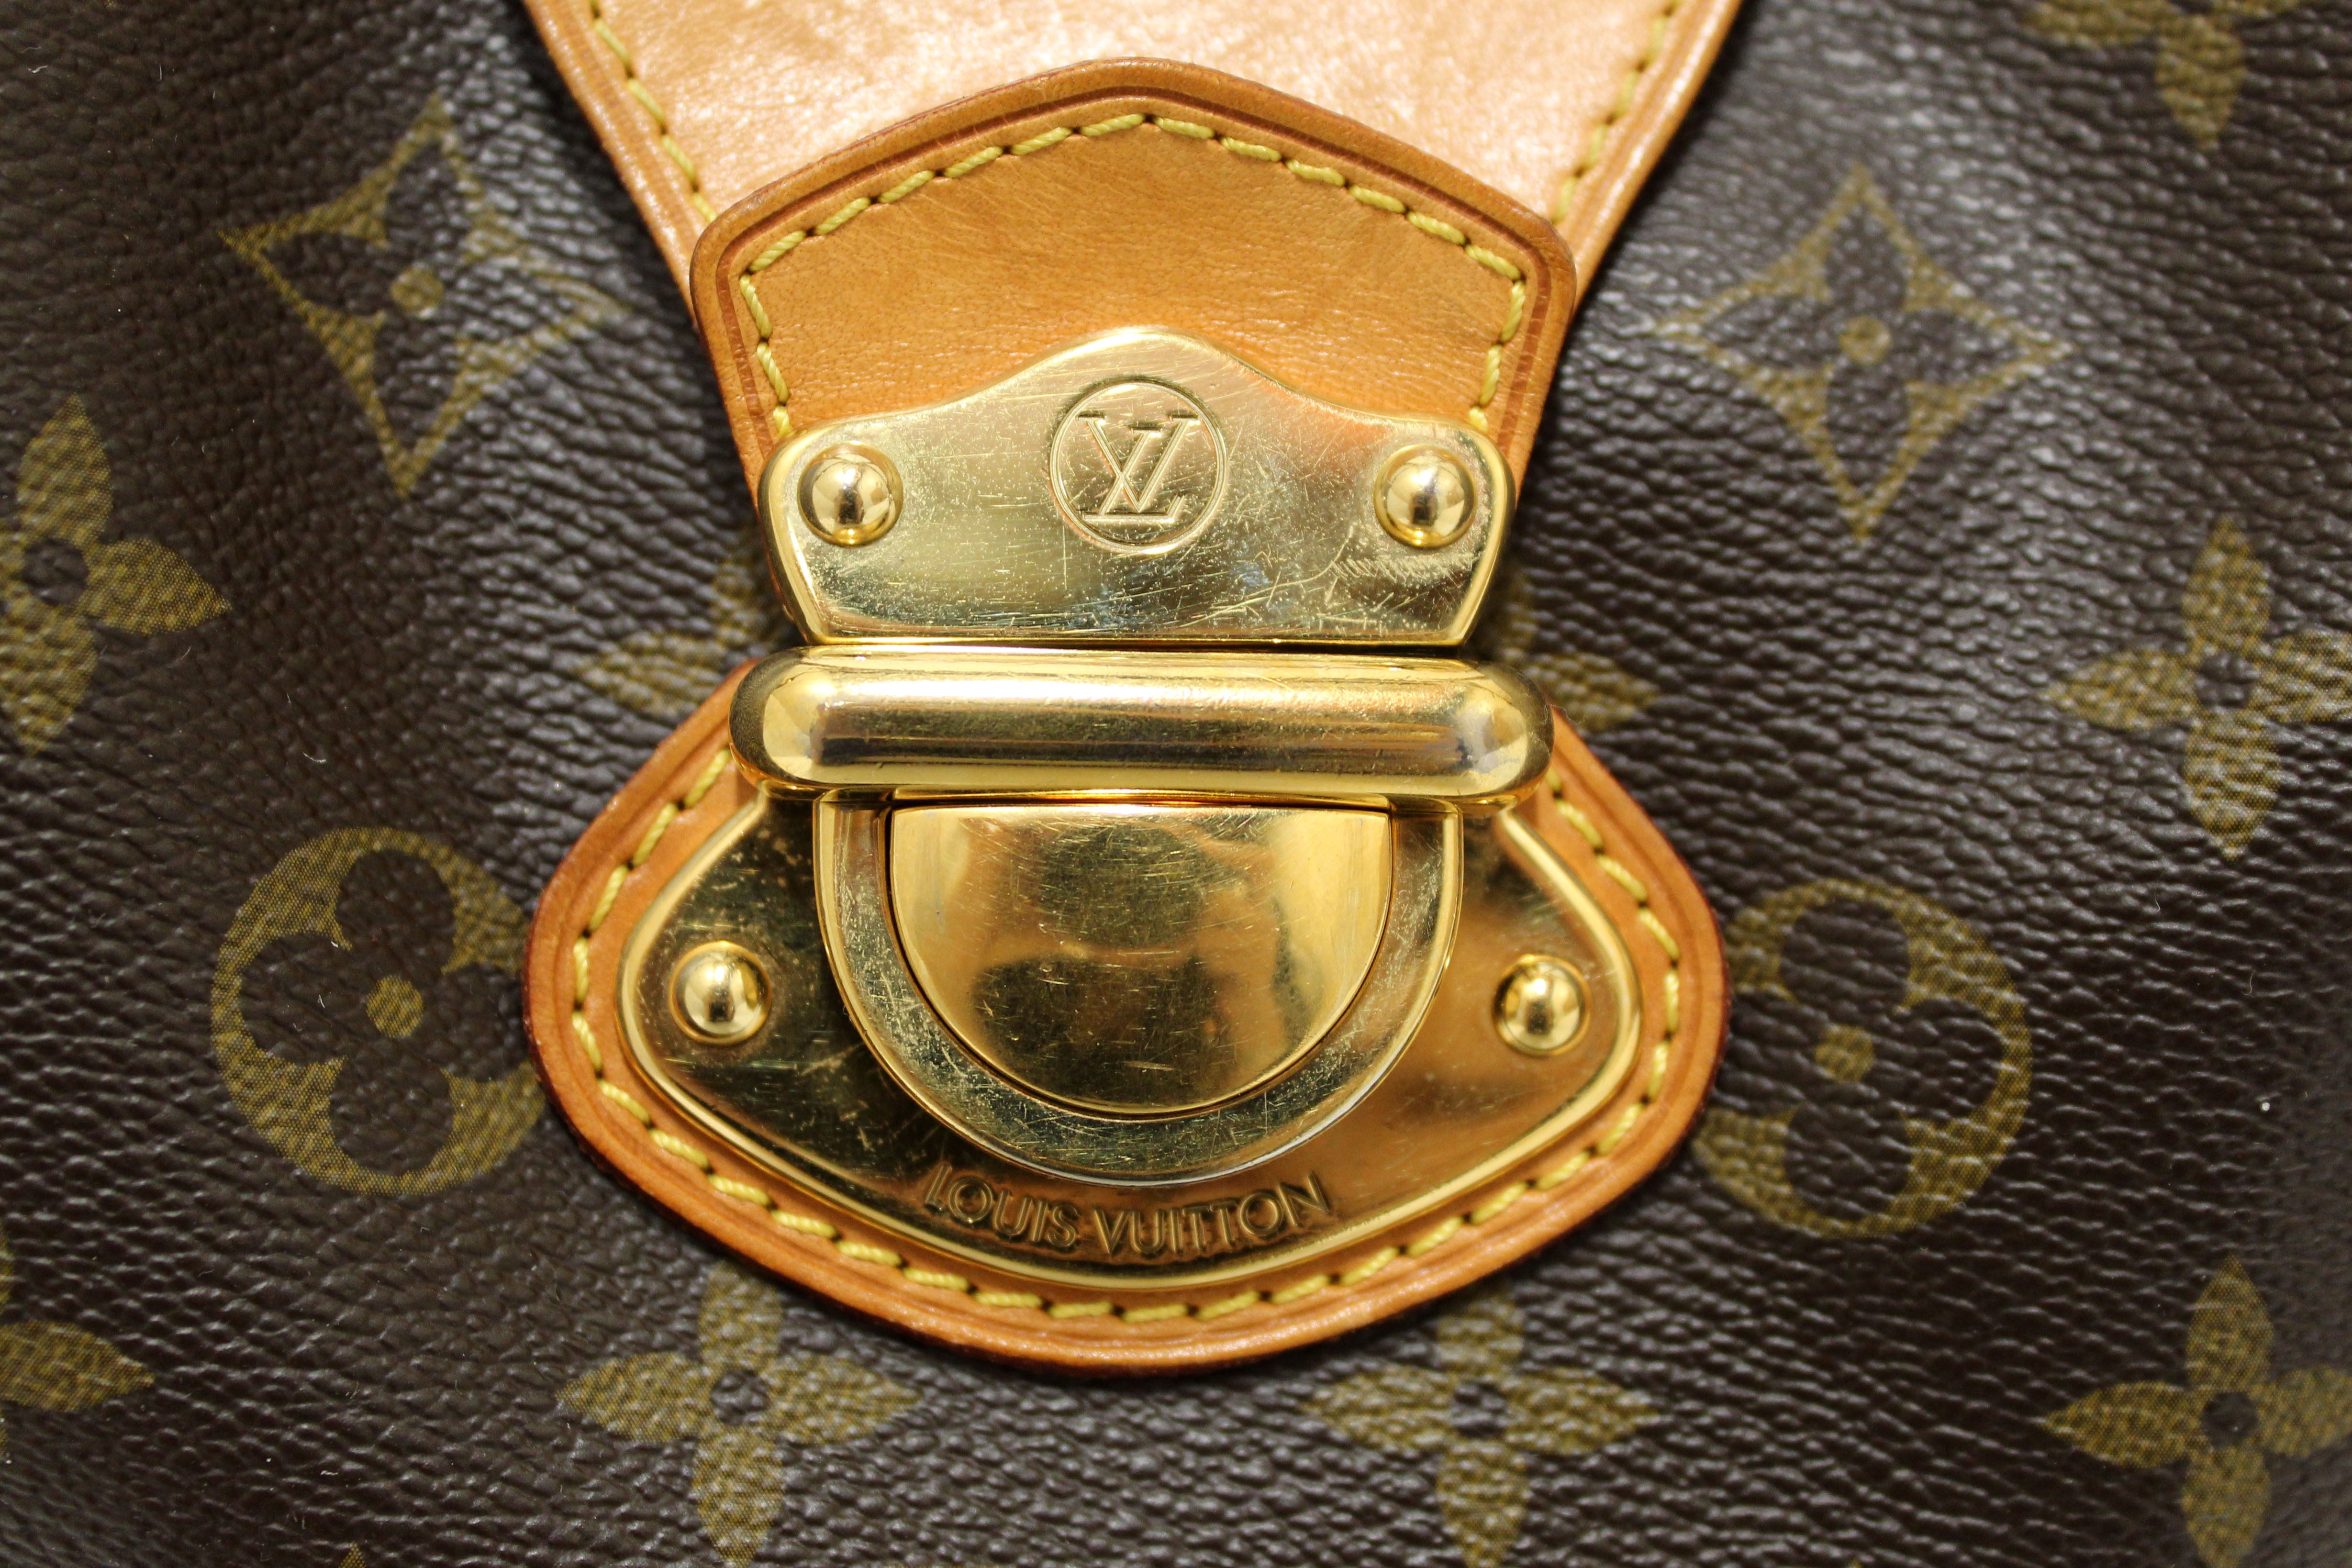 Authentic Louis Vuitton Classic Monogram Stresa PM Shoulder Bag